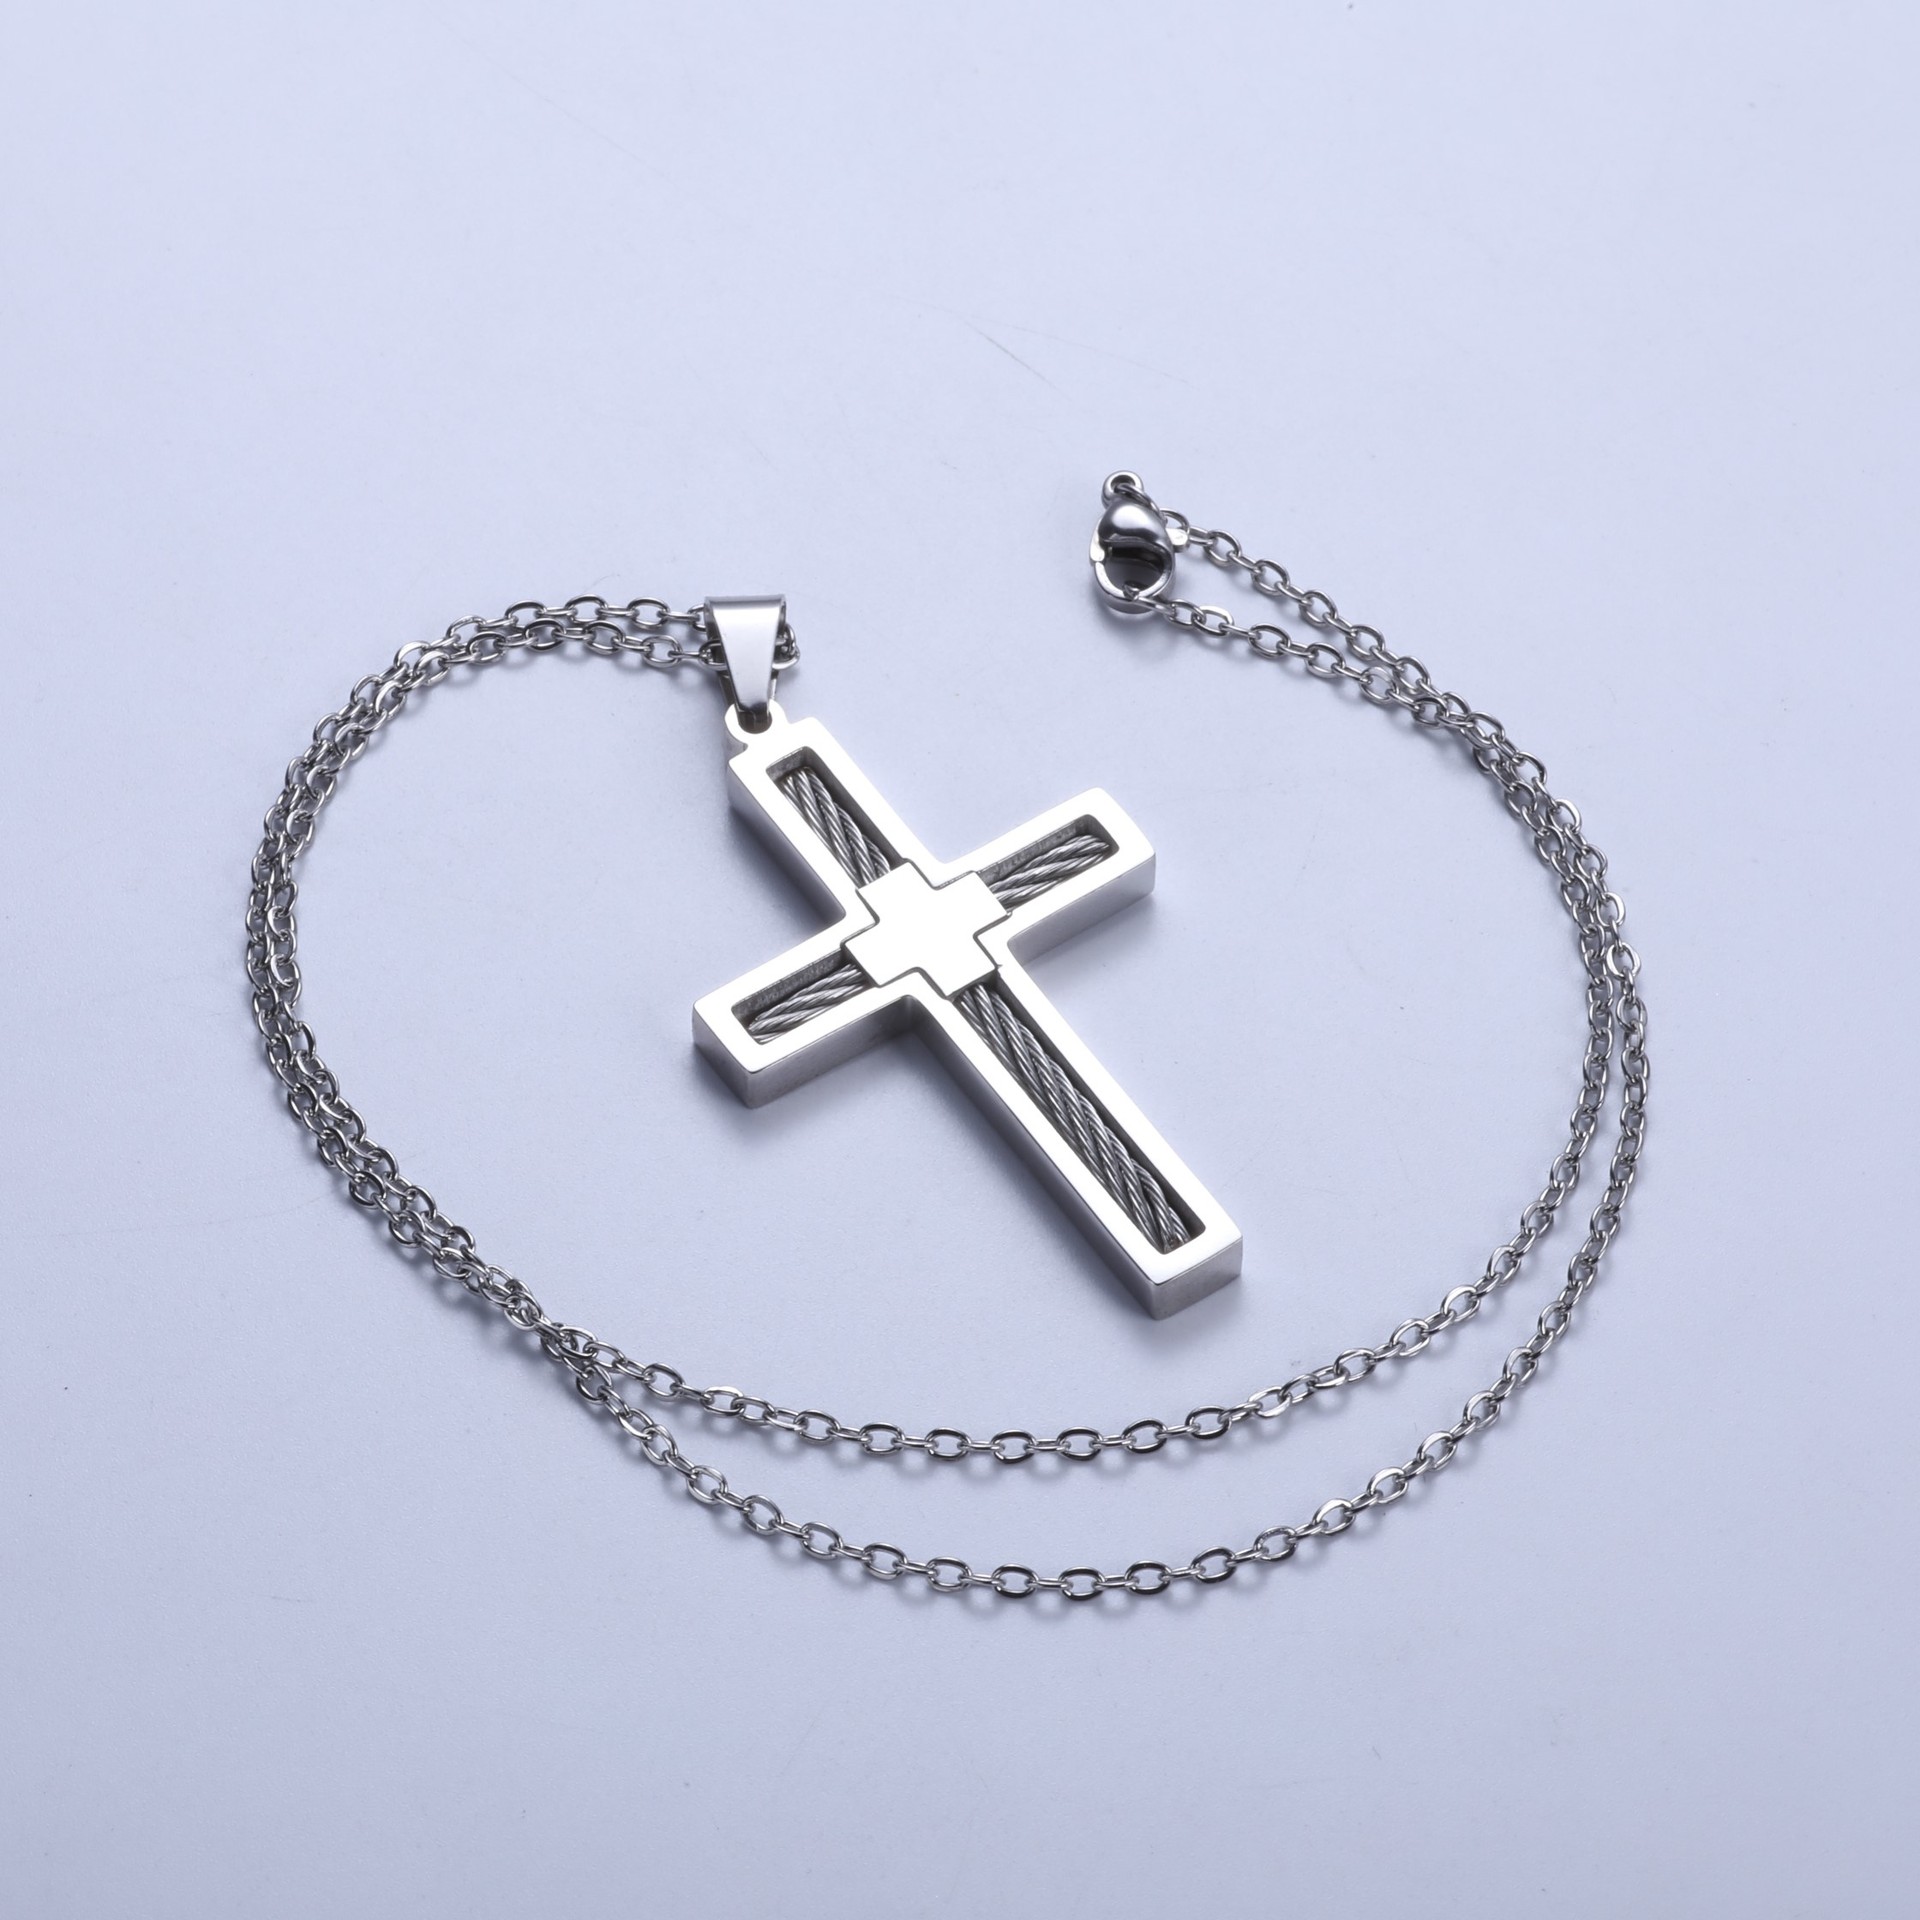 Steel pendant + flat cross chain